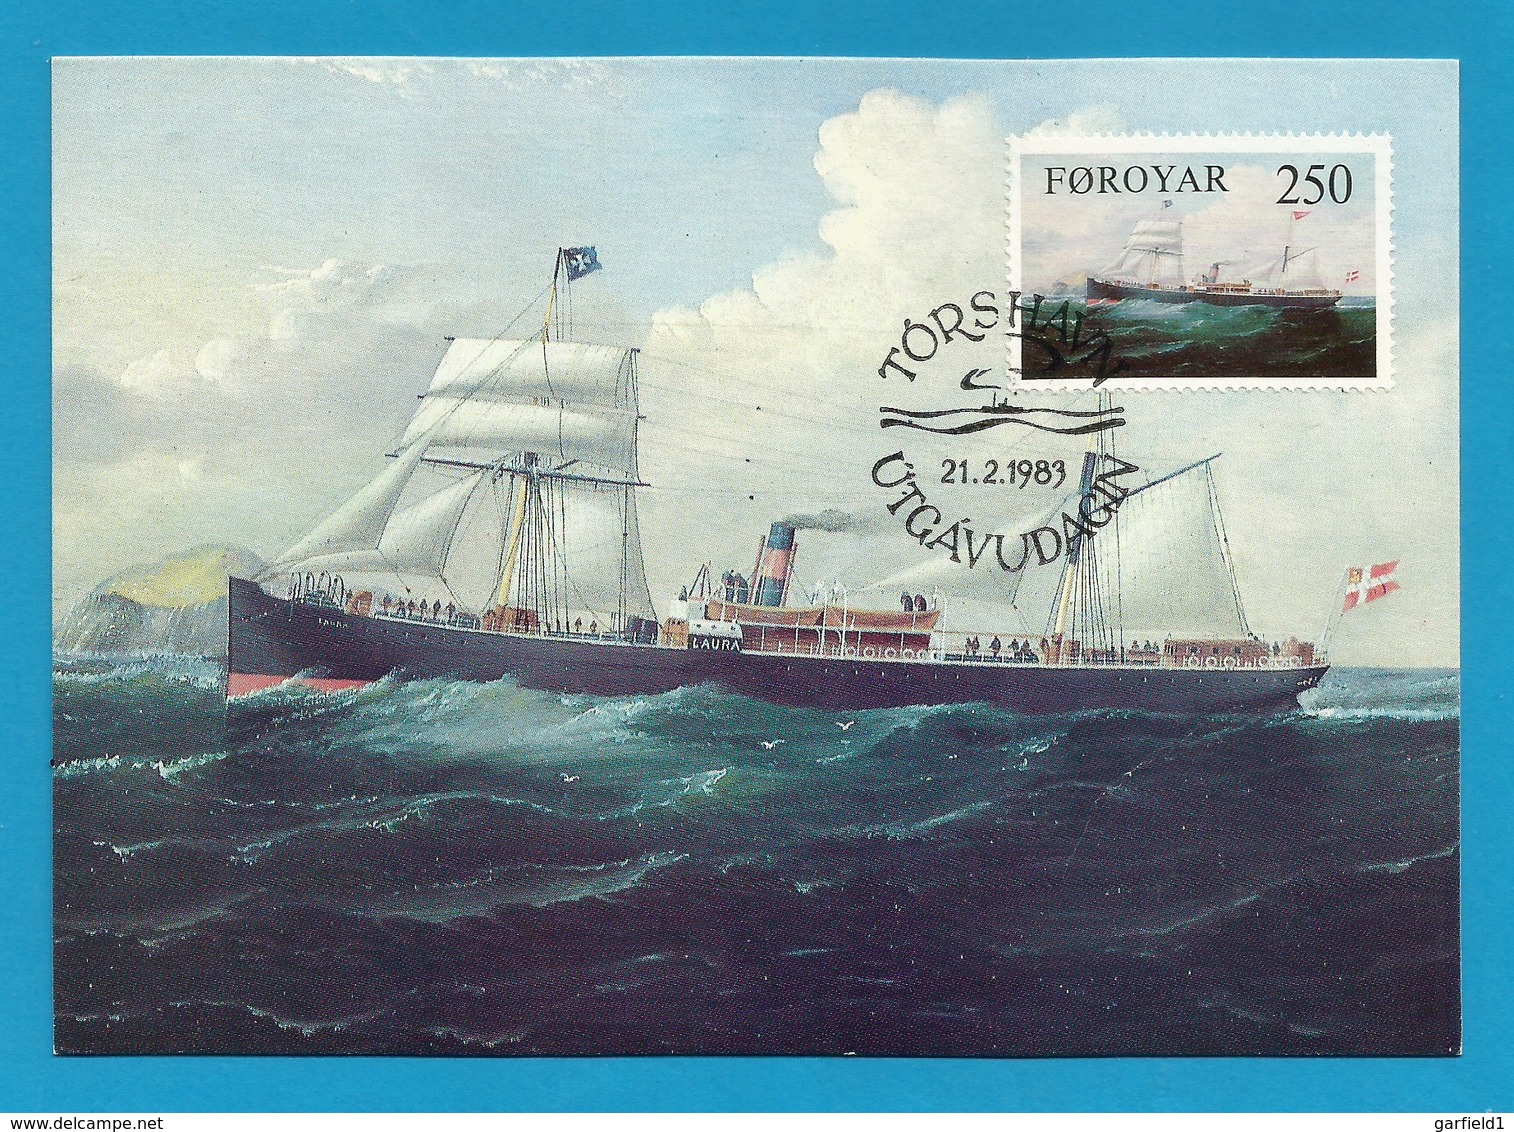 Färöer Inseln 1983  Mi.Nr. 80 , Dampfschiff "Laura" - Maximum Karte - Stempel Törshavn 21.2.1983 - Färöer Inseln